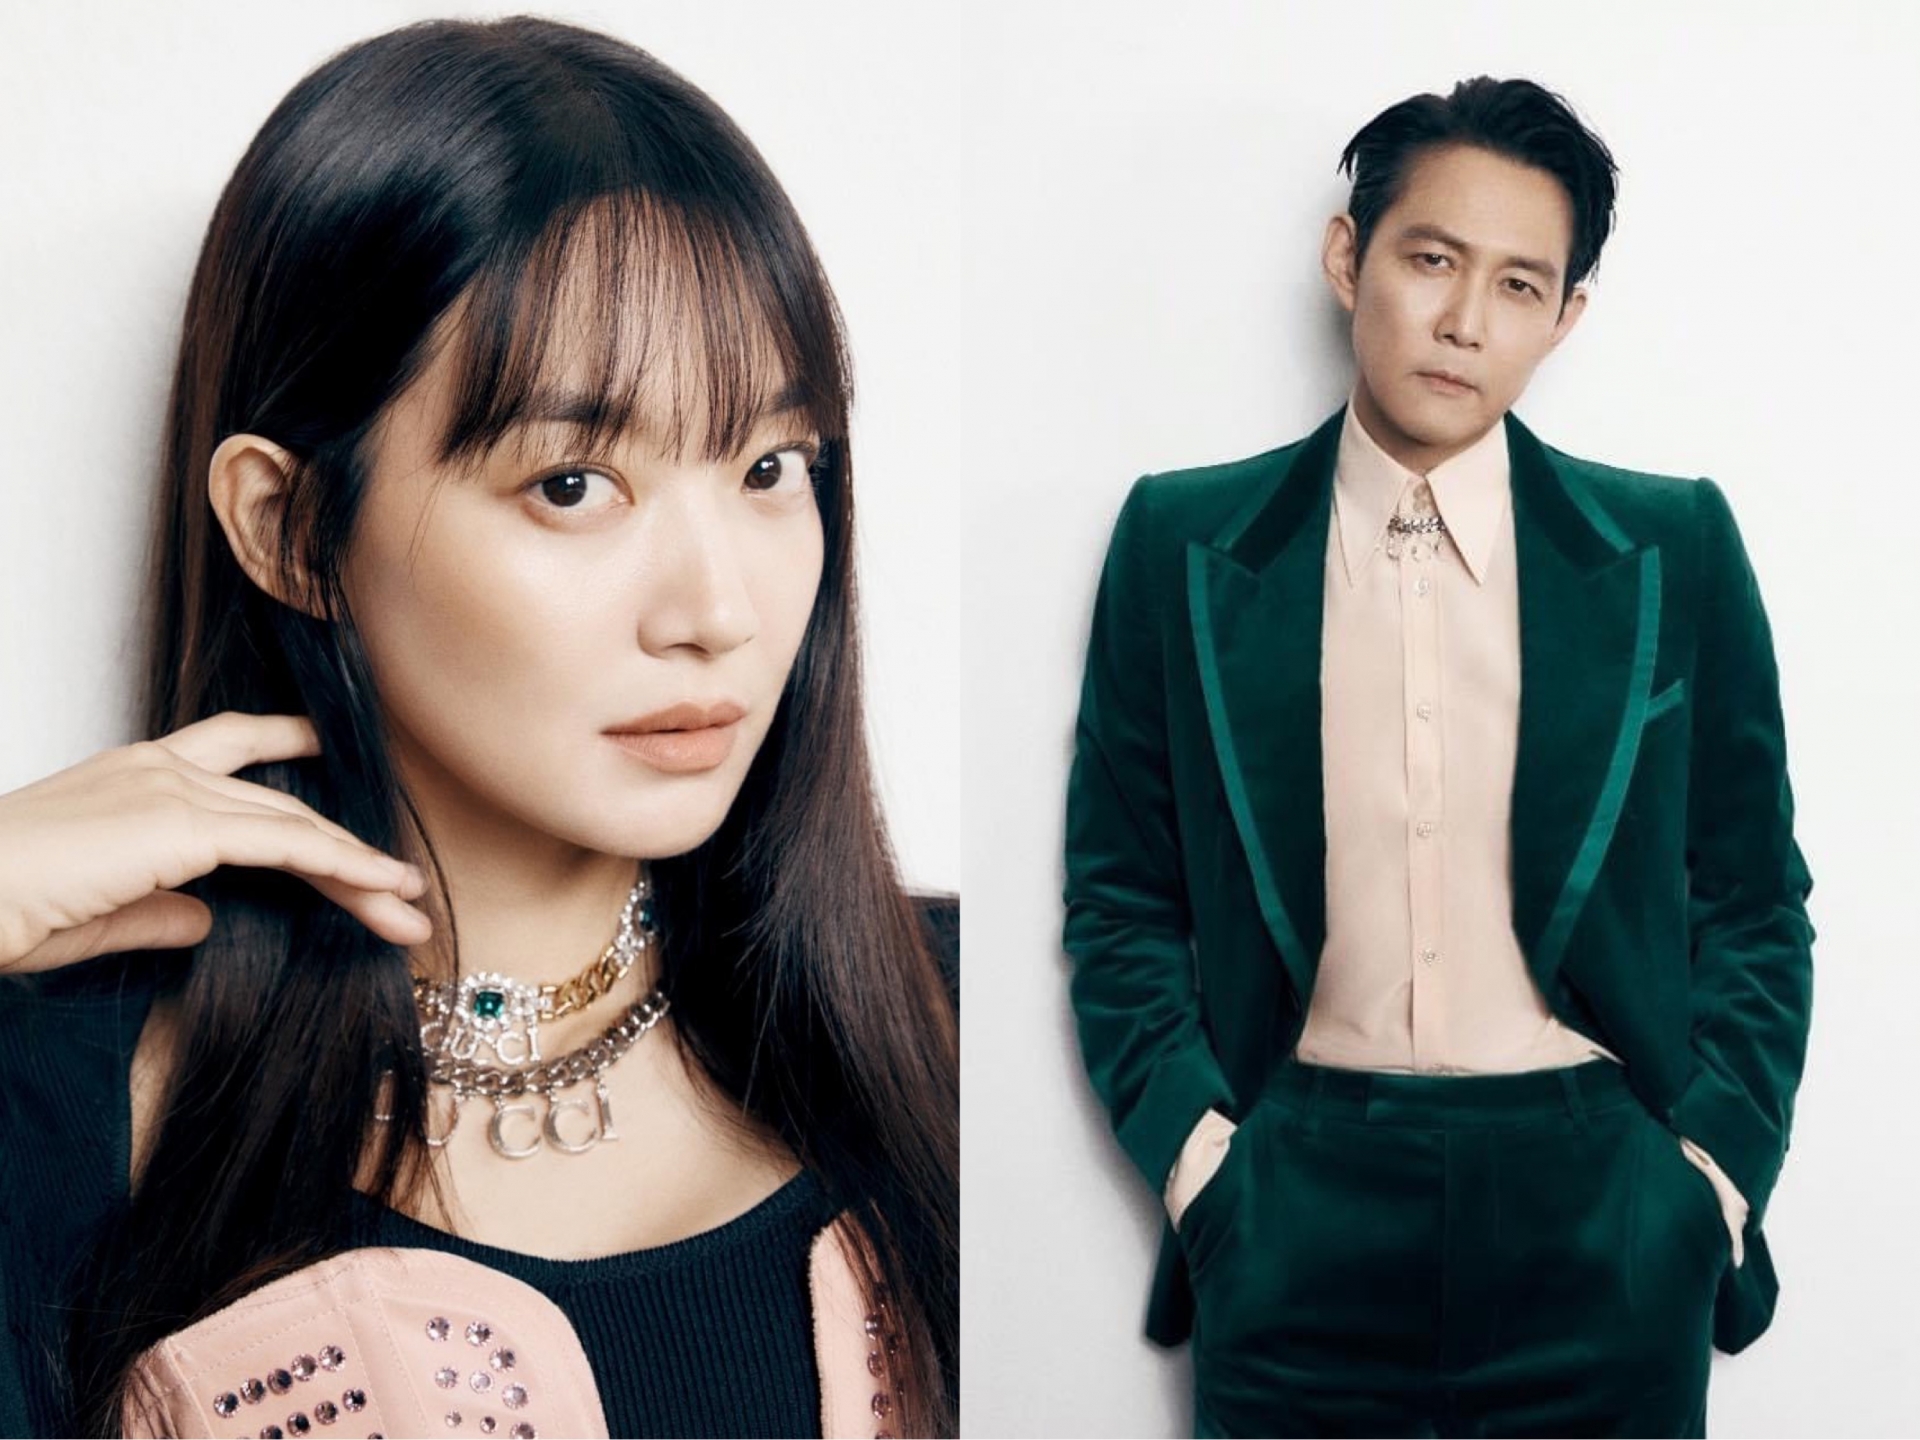 Shin Min Ah và Lee Jung Jae - 2 cái tên đang cực hot của làng giải trí xứ Hàn đã chính thức trở thành Tân đại sứ toàn cầu của Gucci.